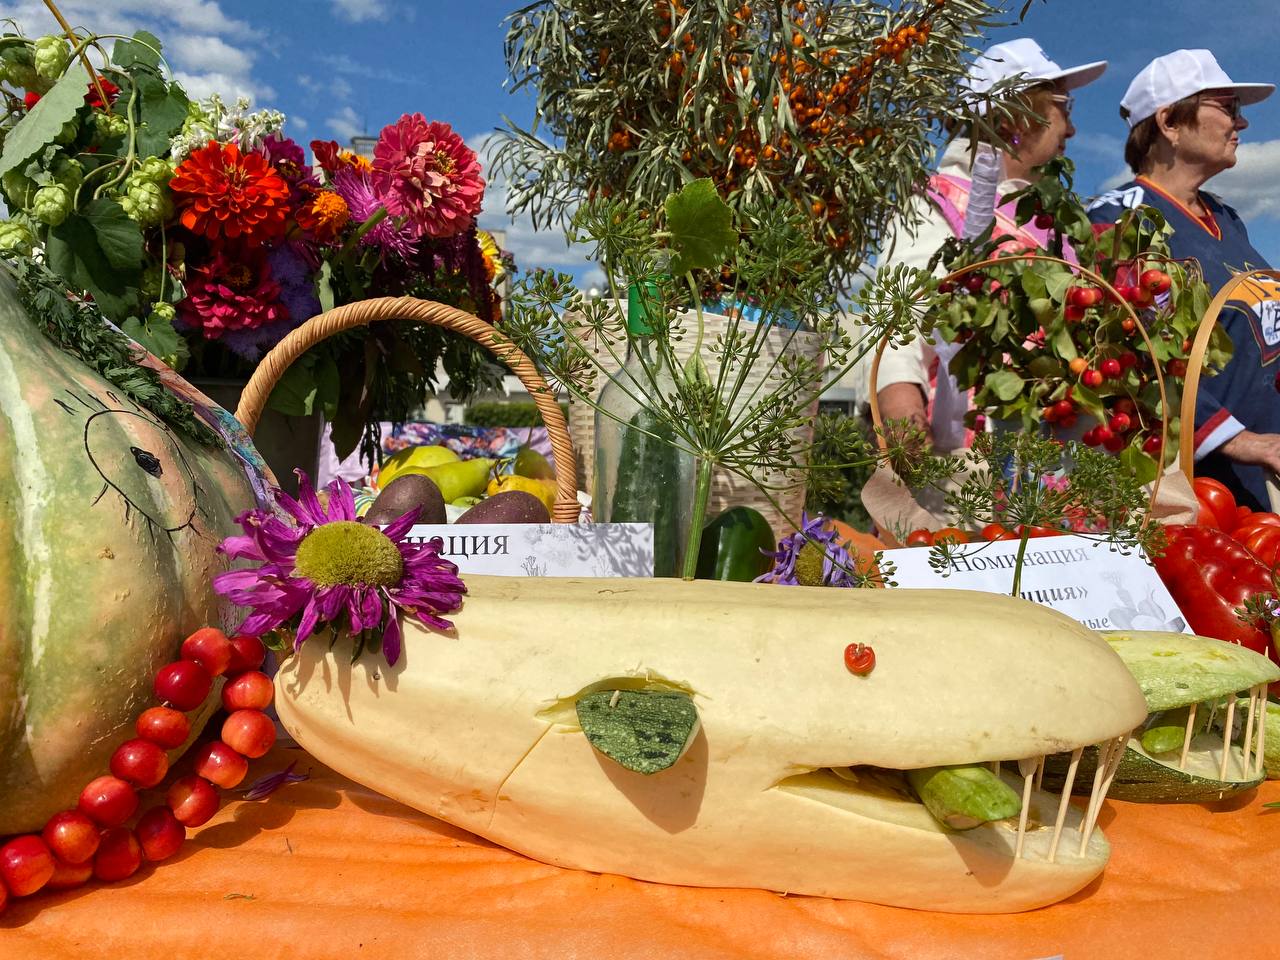 Тыква гигант и овощные поделки. В Магнитогорске задорно прошла выставка урожая "Дары осени- 2023"